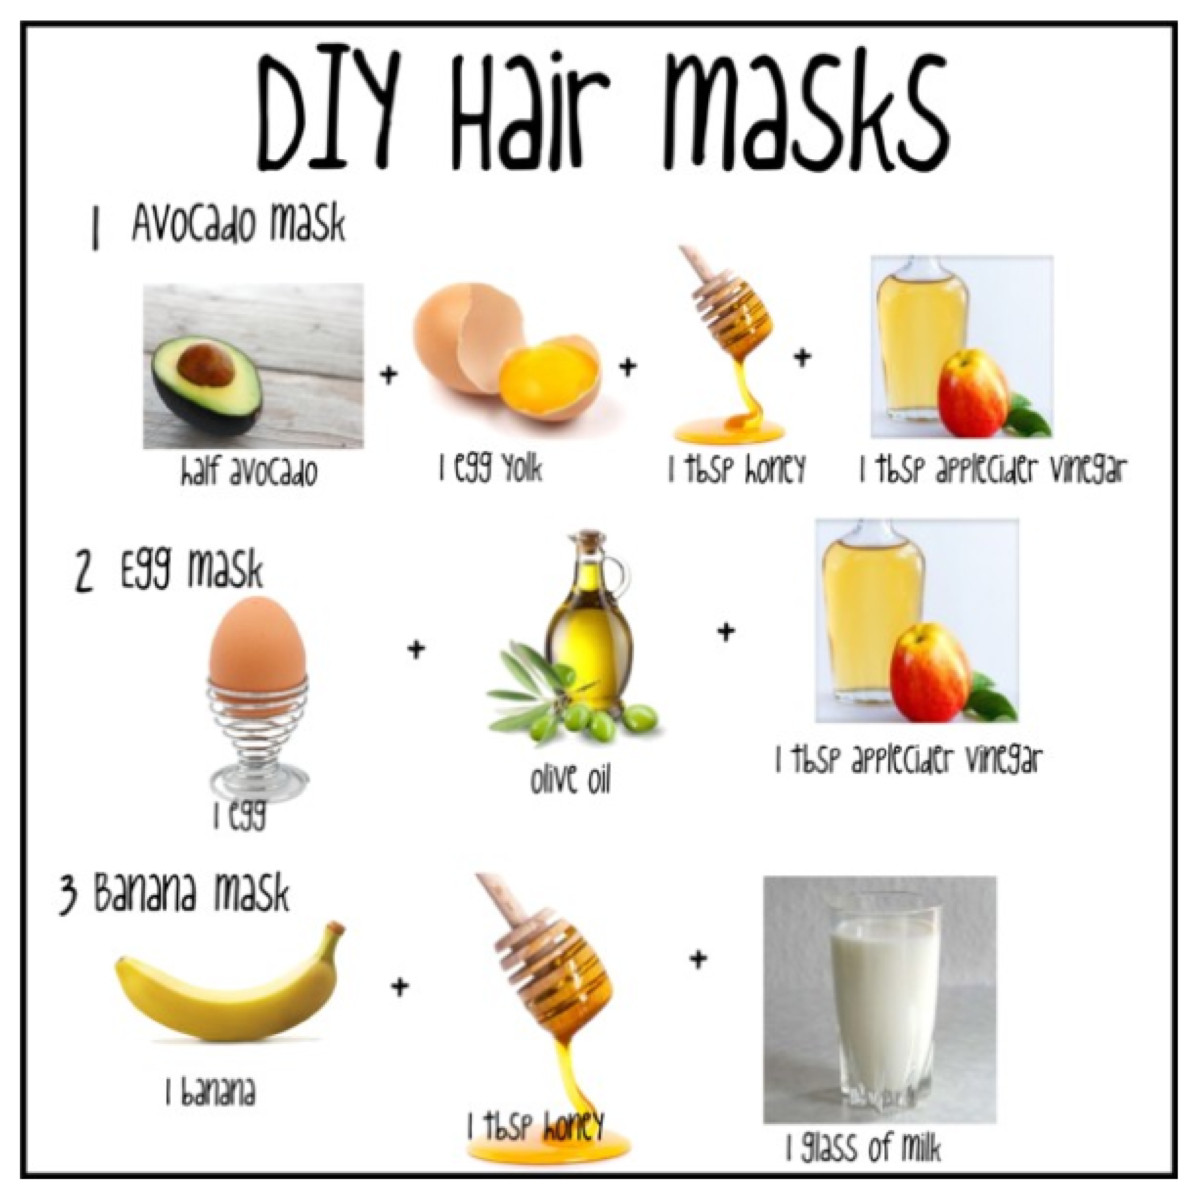 DIY Hair Masque
 DIY Hair Masks